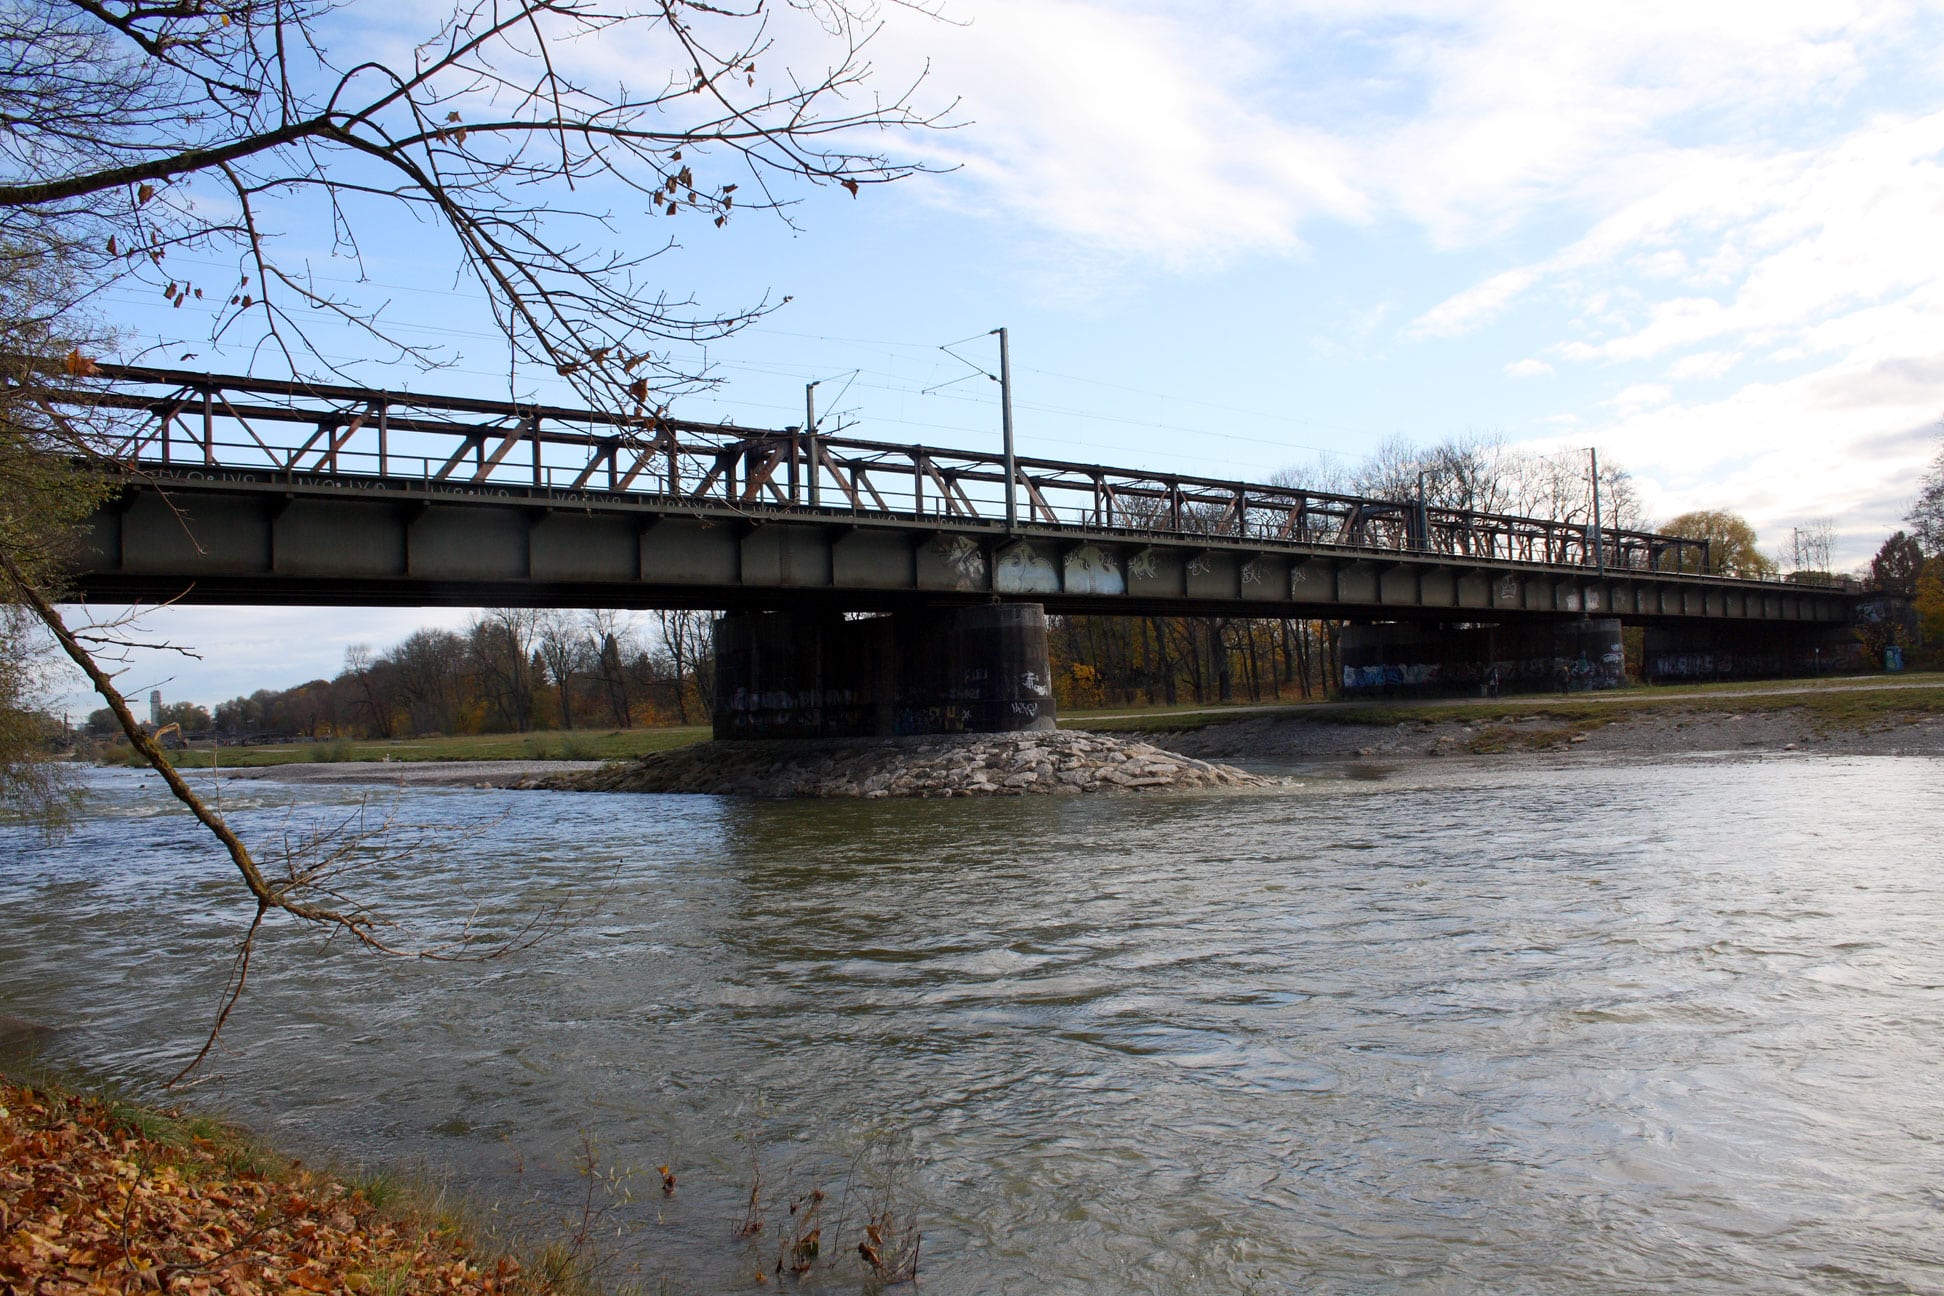 Die Braunauer Eisenbahnbrücke dient derzeit nur dem Zugverkehr, könnte aber eine wichtige Verbindung für den Fuß- und Radverkehr in München darstellen. Foto: Bjs, CC BY-SA 3.0 , via Wikimedia Commons